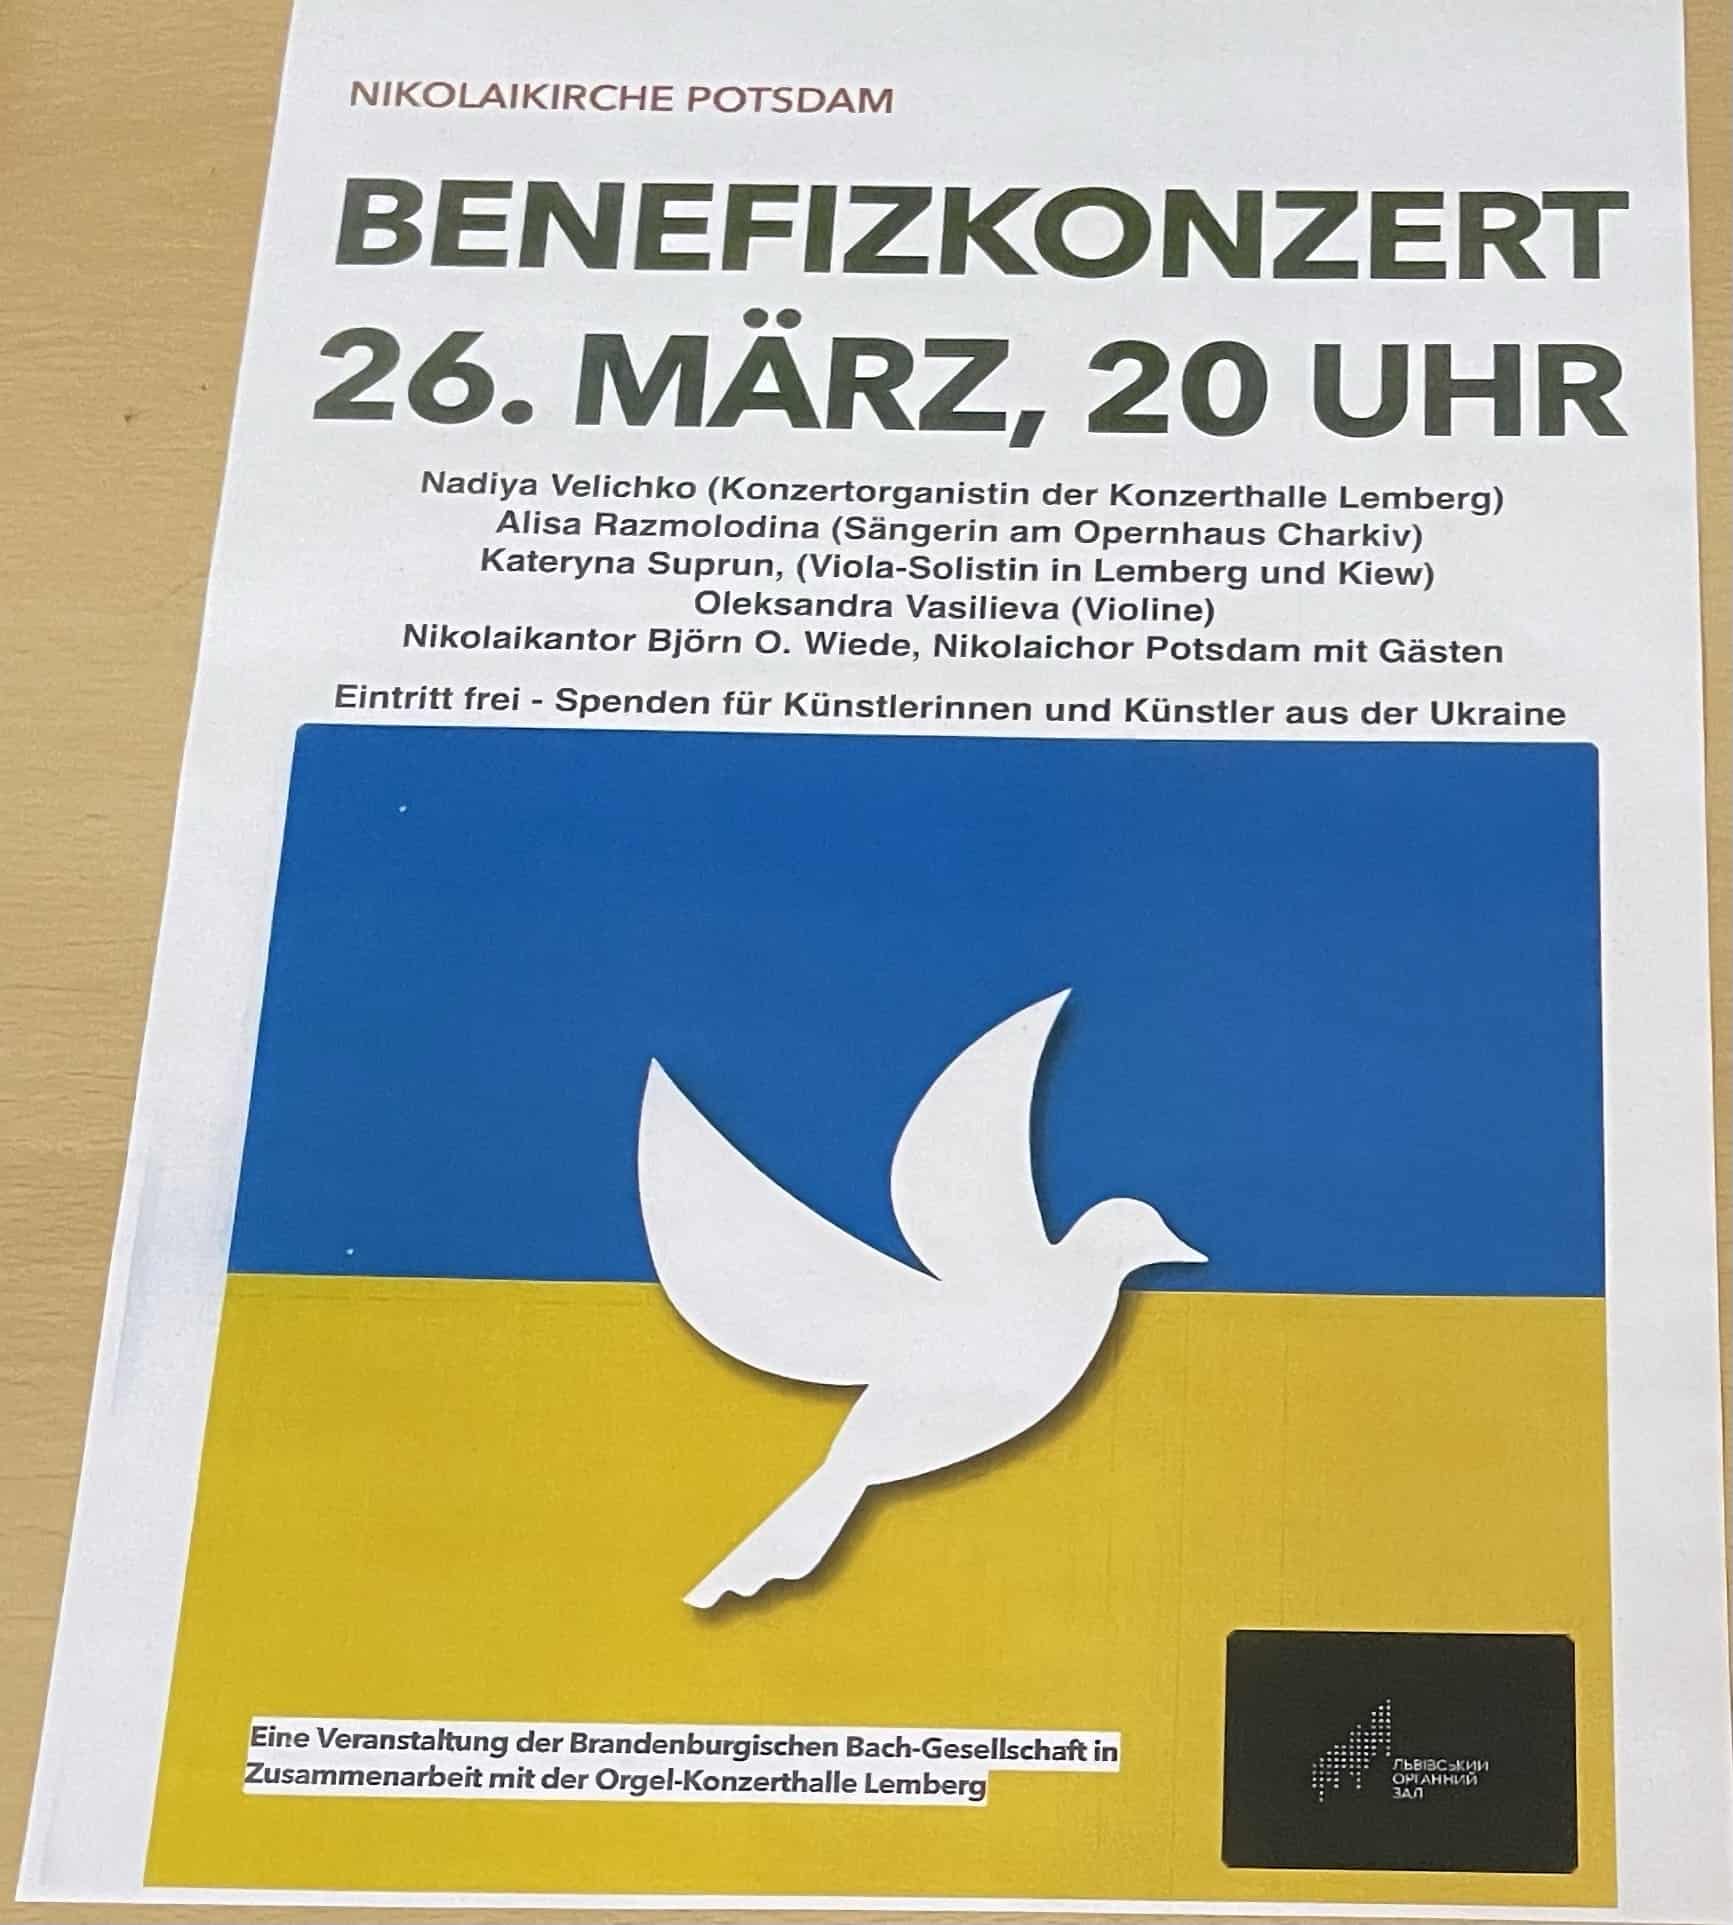 Plakat für Benefizkonzert in der Nicolaikirche Potsdam